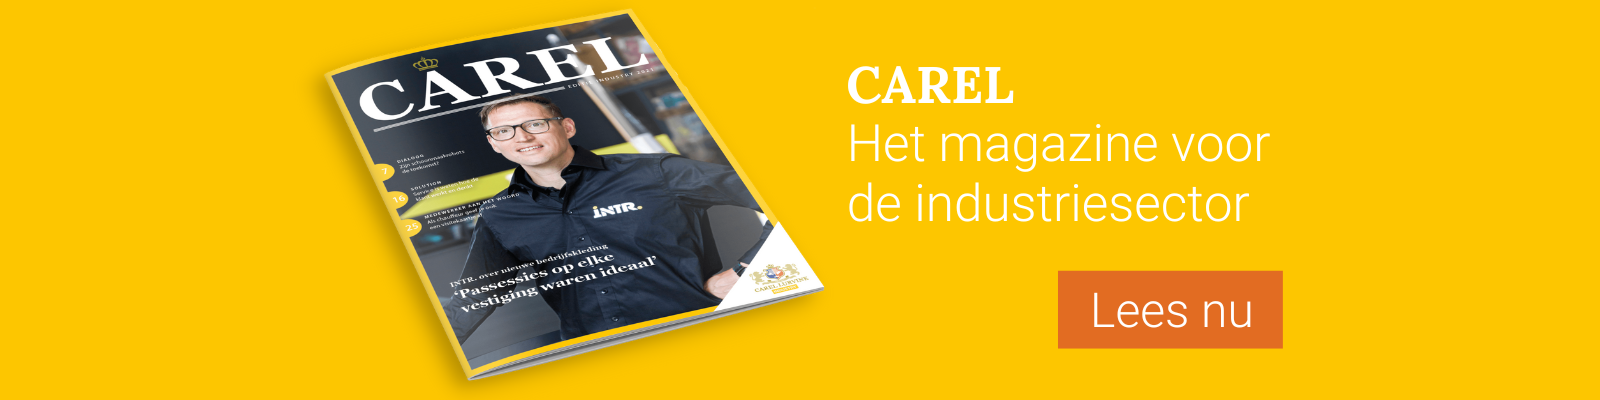 Carel, het magazine voor de industriesector